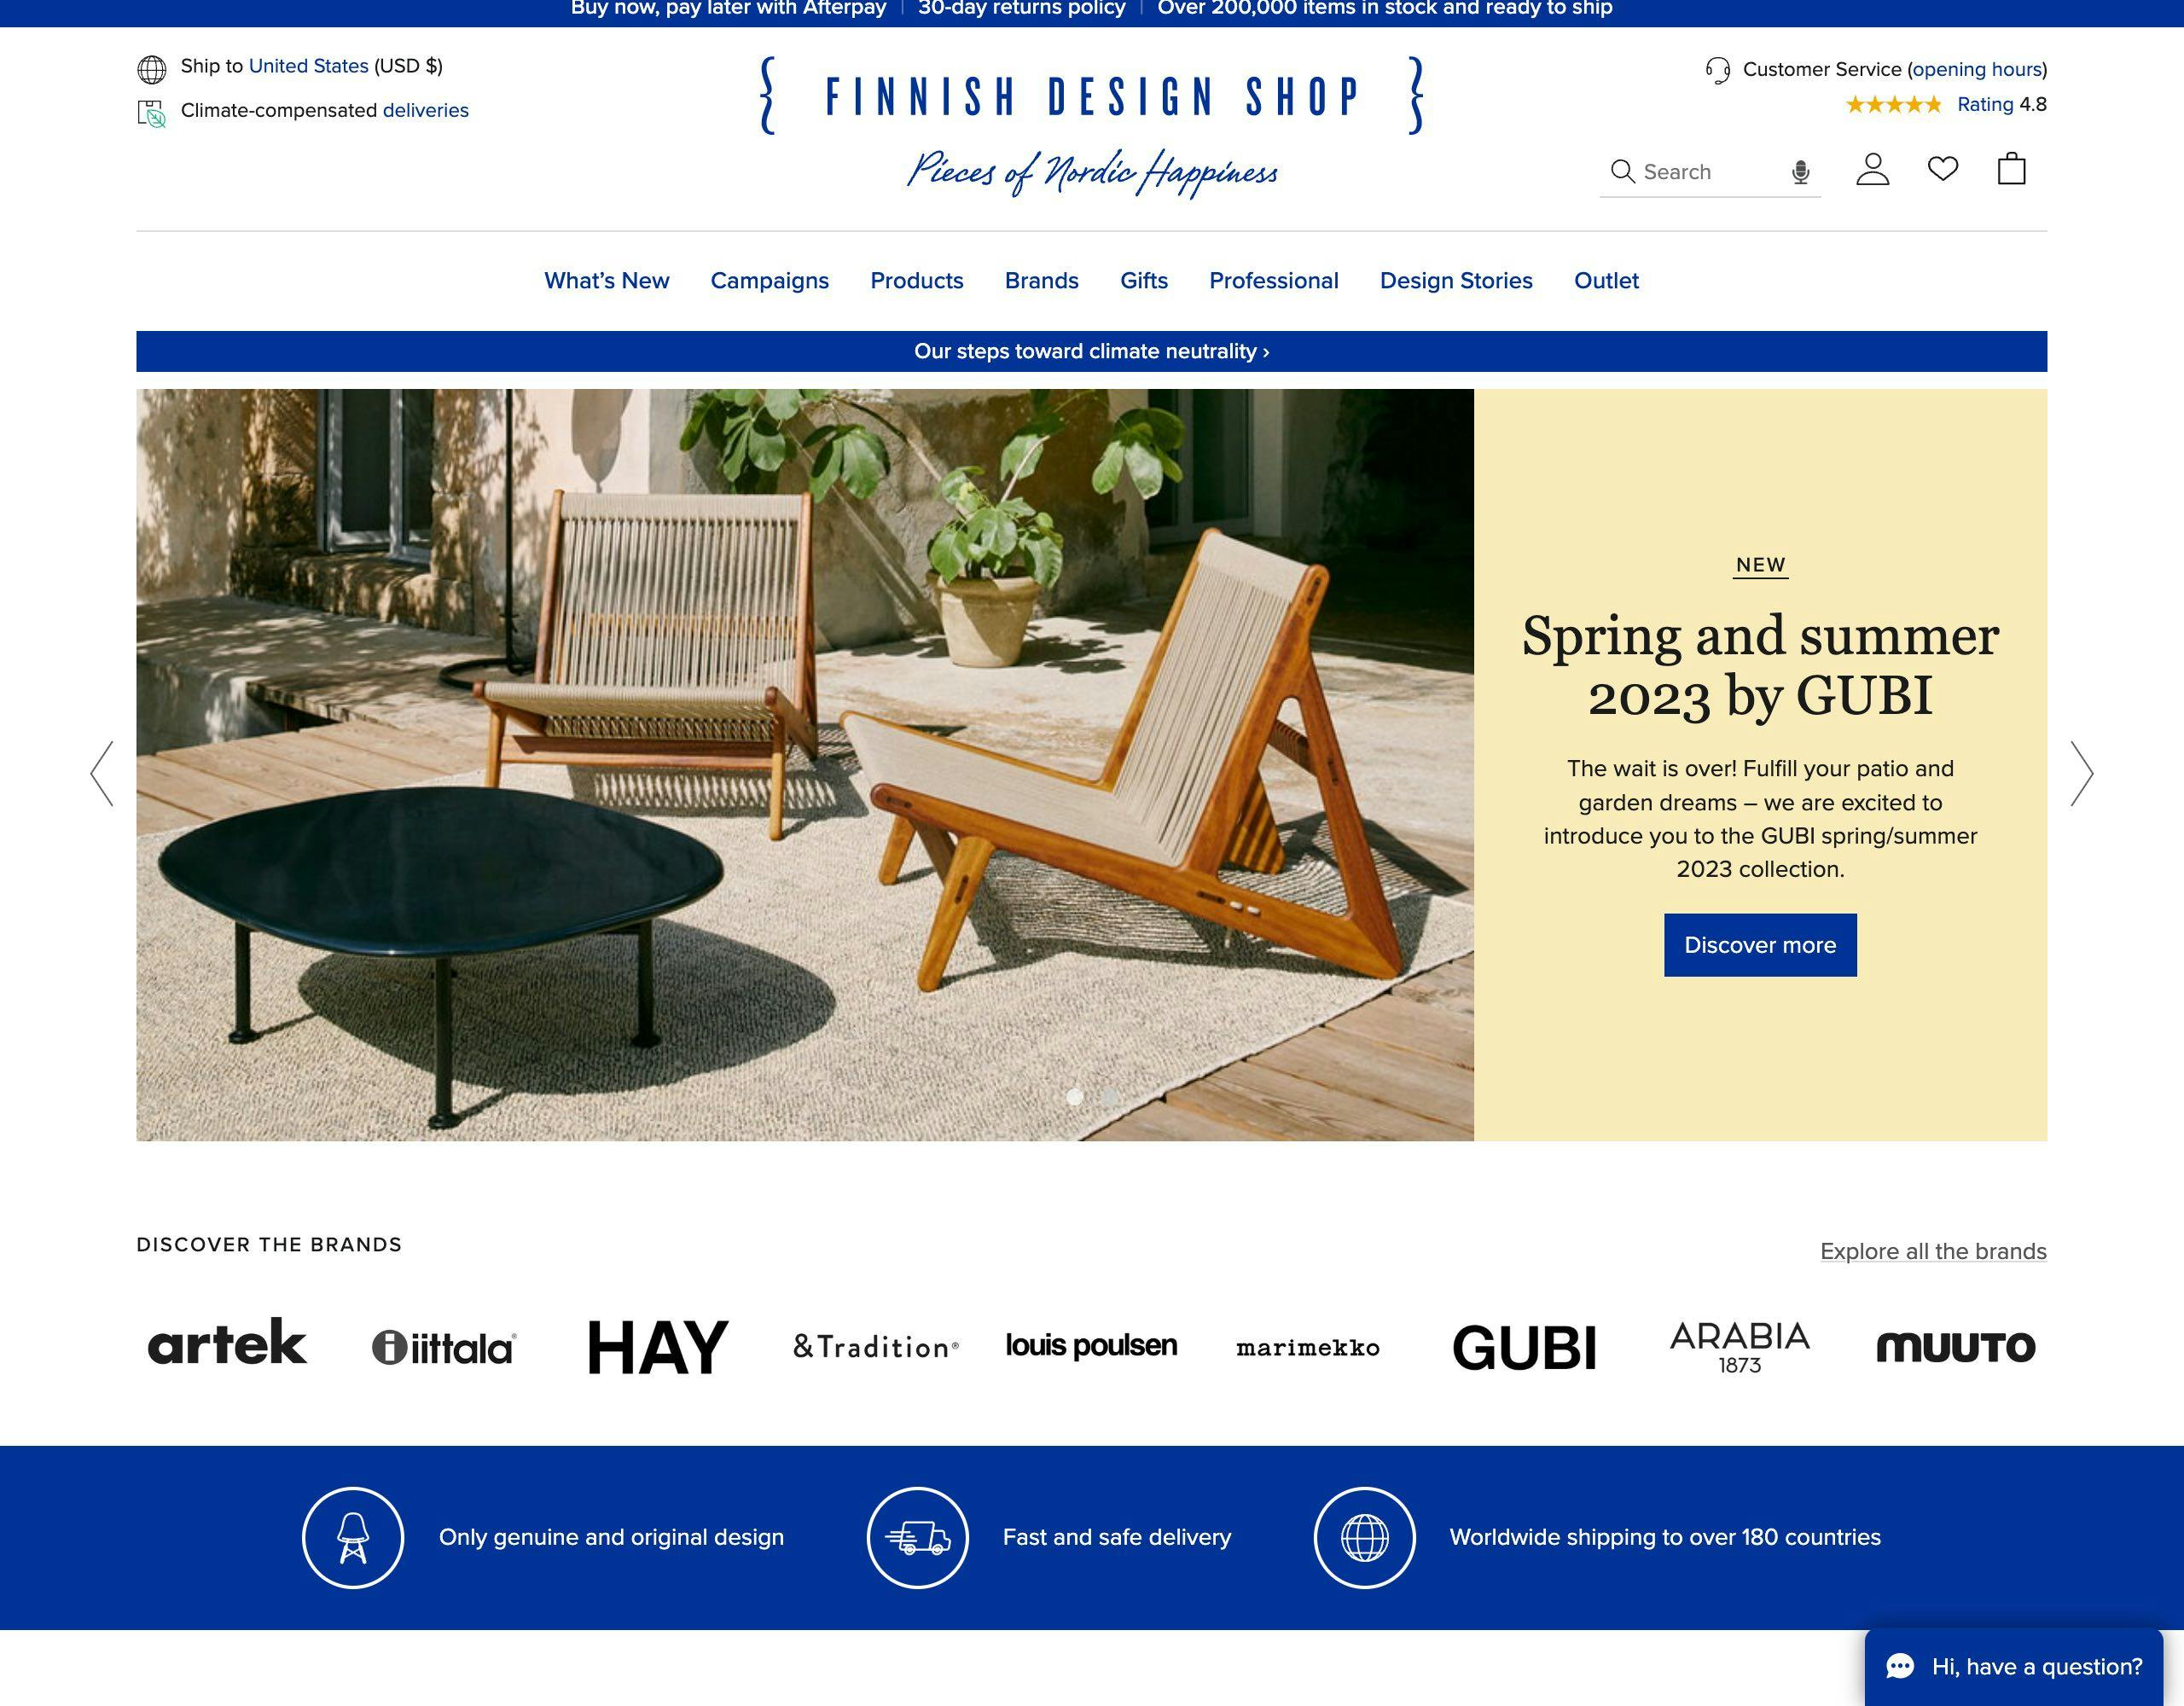 Finish Design Shop website